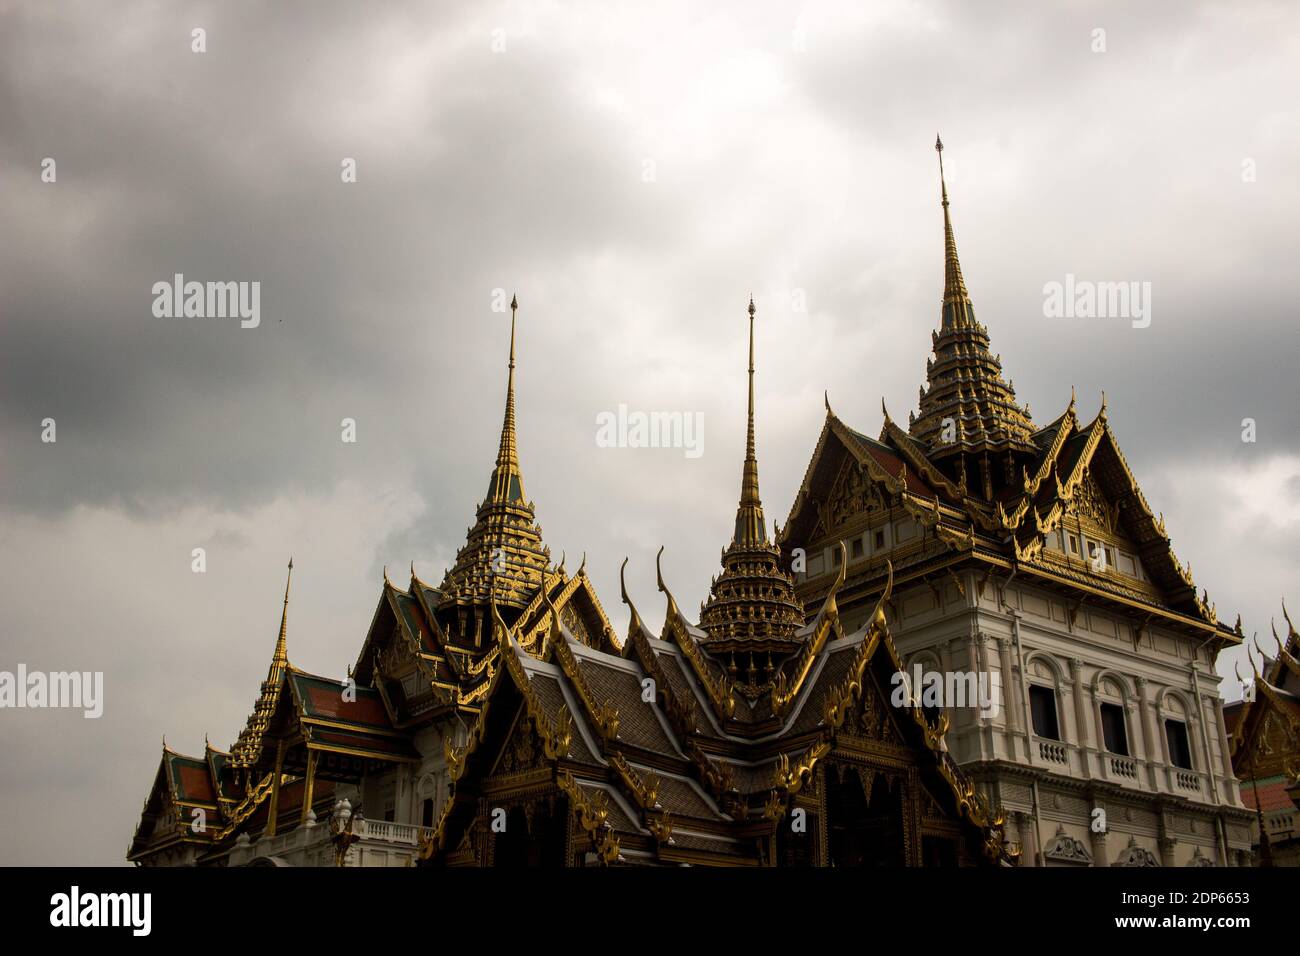 THA - PALAIS ROYAL DE BANGKOK Tourisme au Palais Royal de Bangkok. THA - ROYAL PALACE OF BANGKOK Tourism at the Royal Palace in Bangkok. Stock Photo